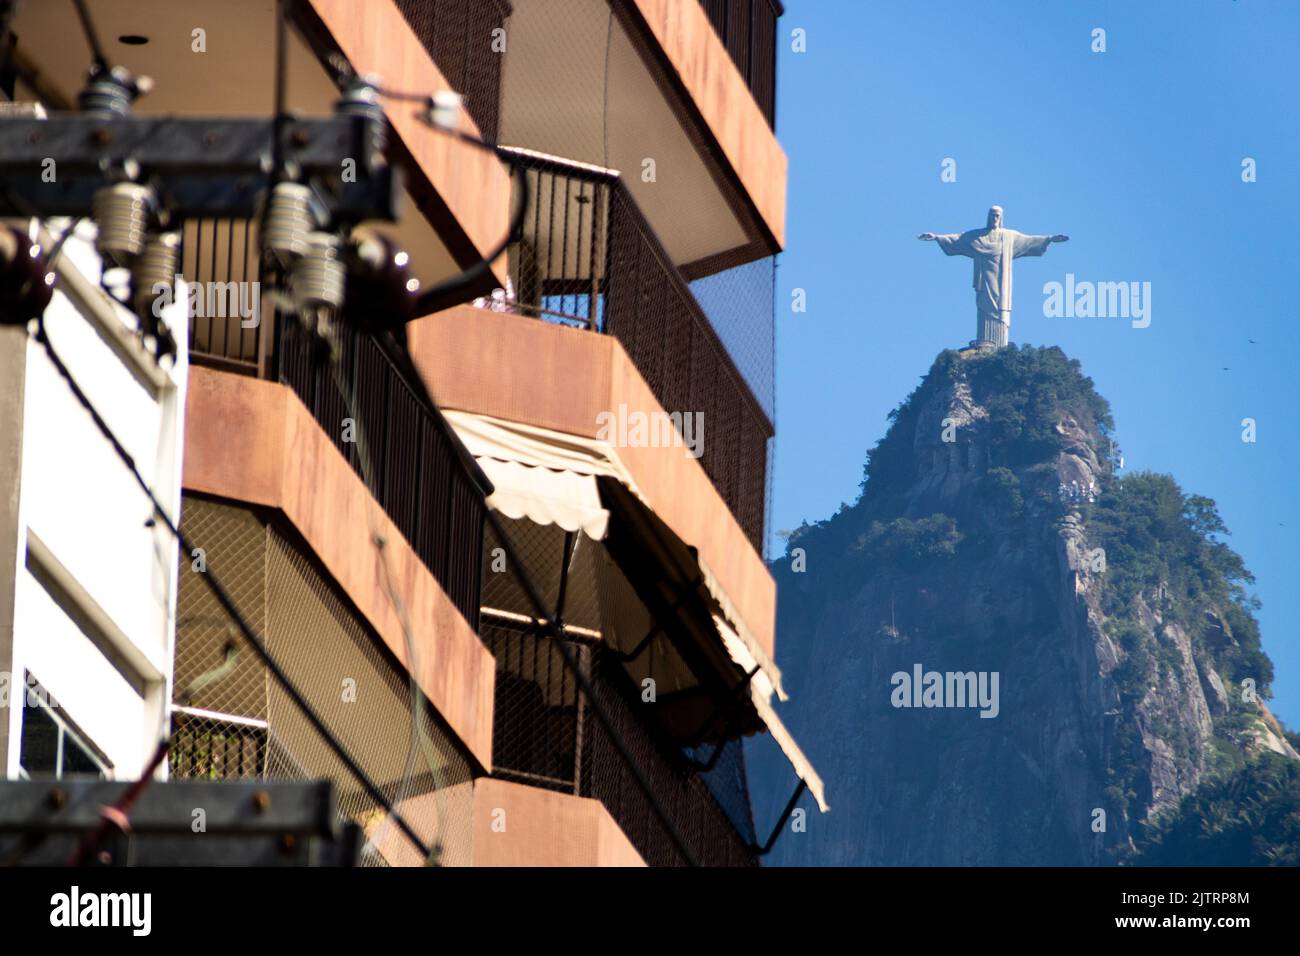 Balkon eines Gebäudes mit schwarzem Schutzschirm und der Christus-Erlöser-Statue im Hintergrund in Rio de Janeiro, Brasilien - 22. Juni 2020: bal Stockfoto